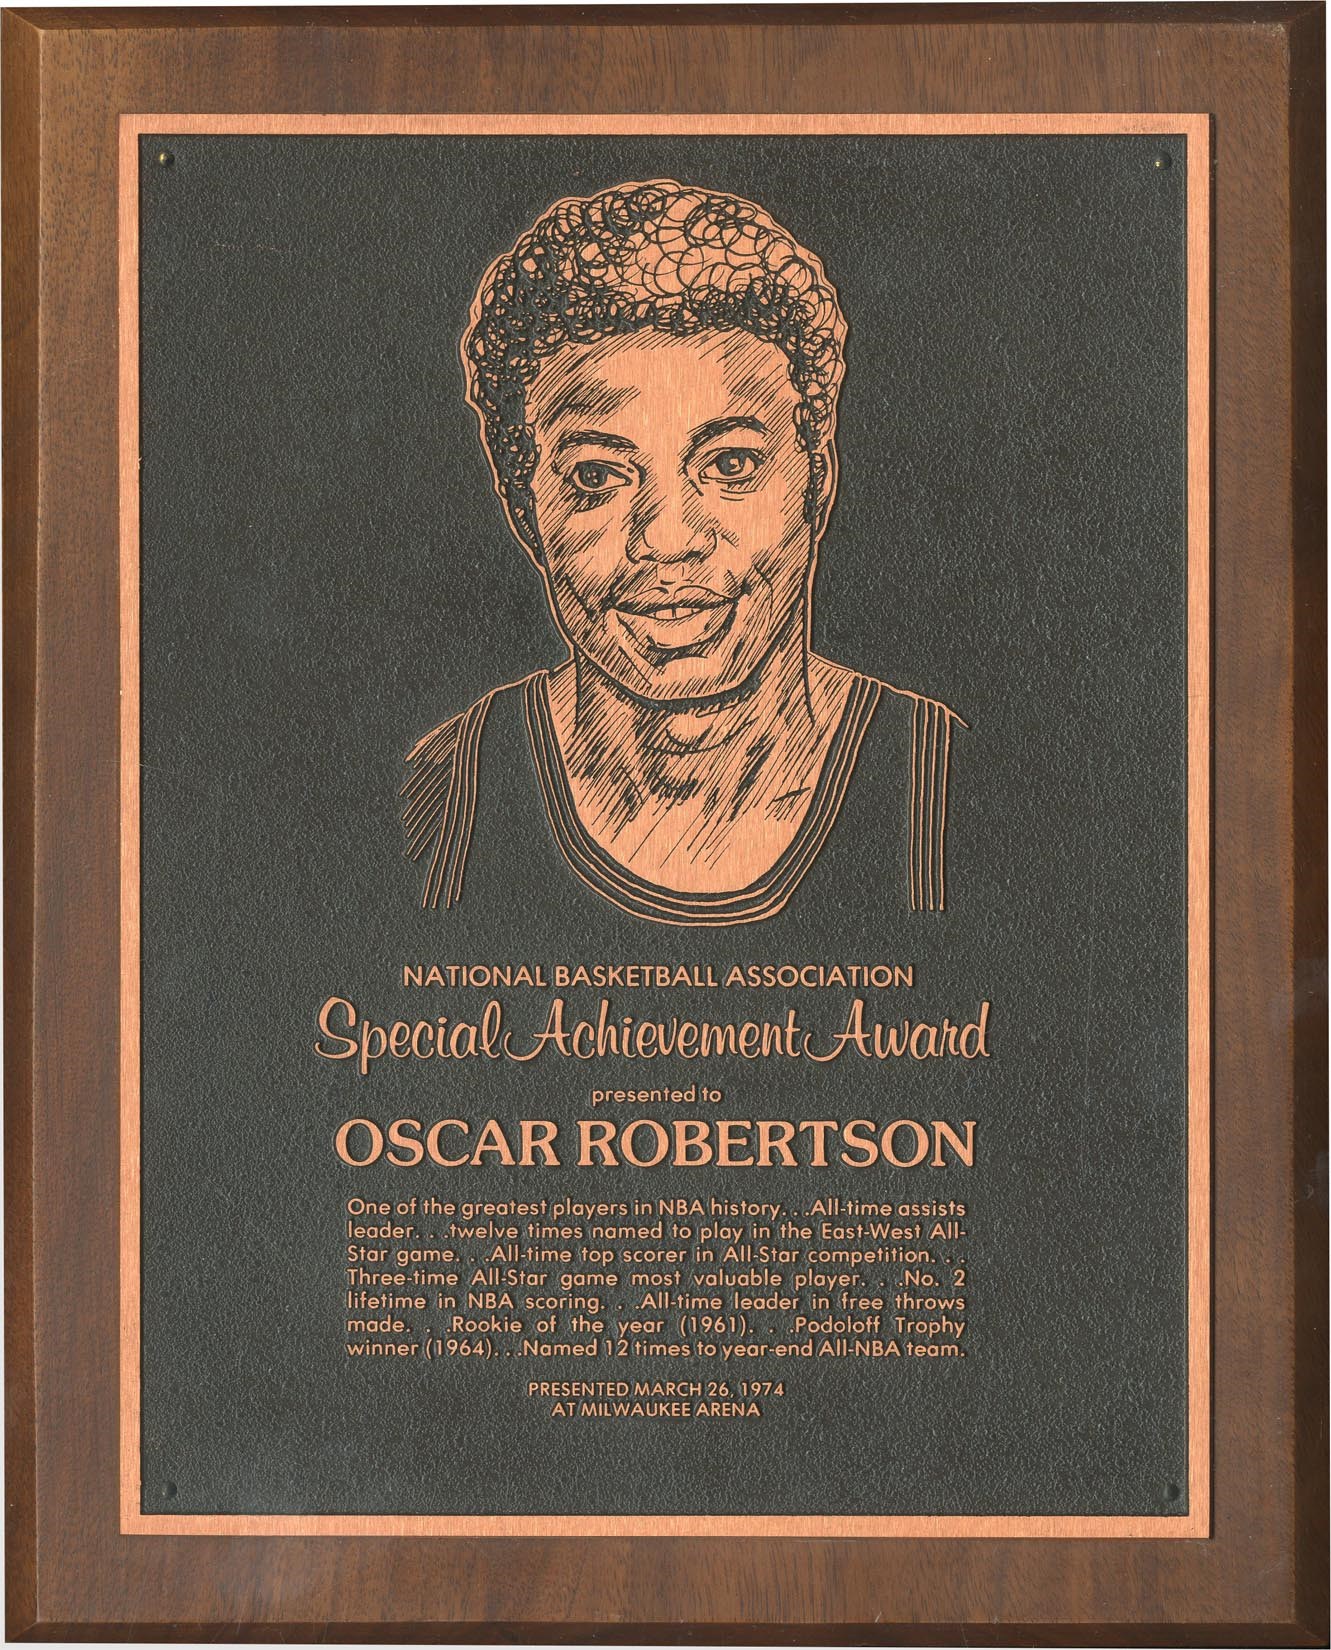 The Oscar Robertson Collection - 1974 Oscar Robertson NBA Special Acheivement Award